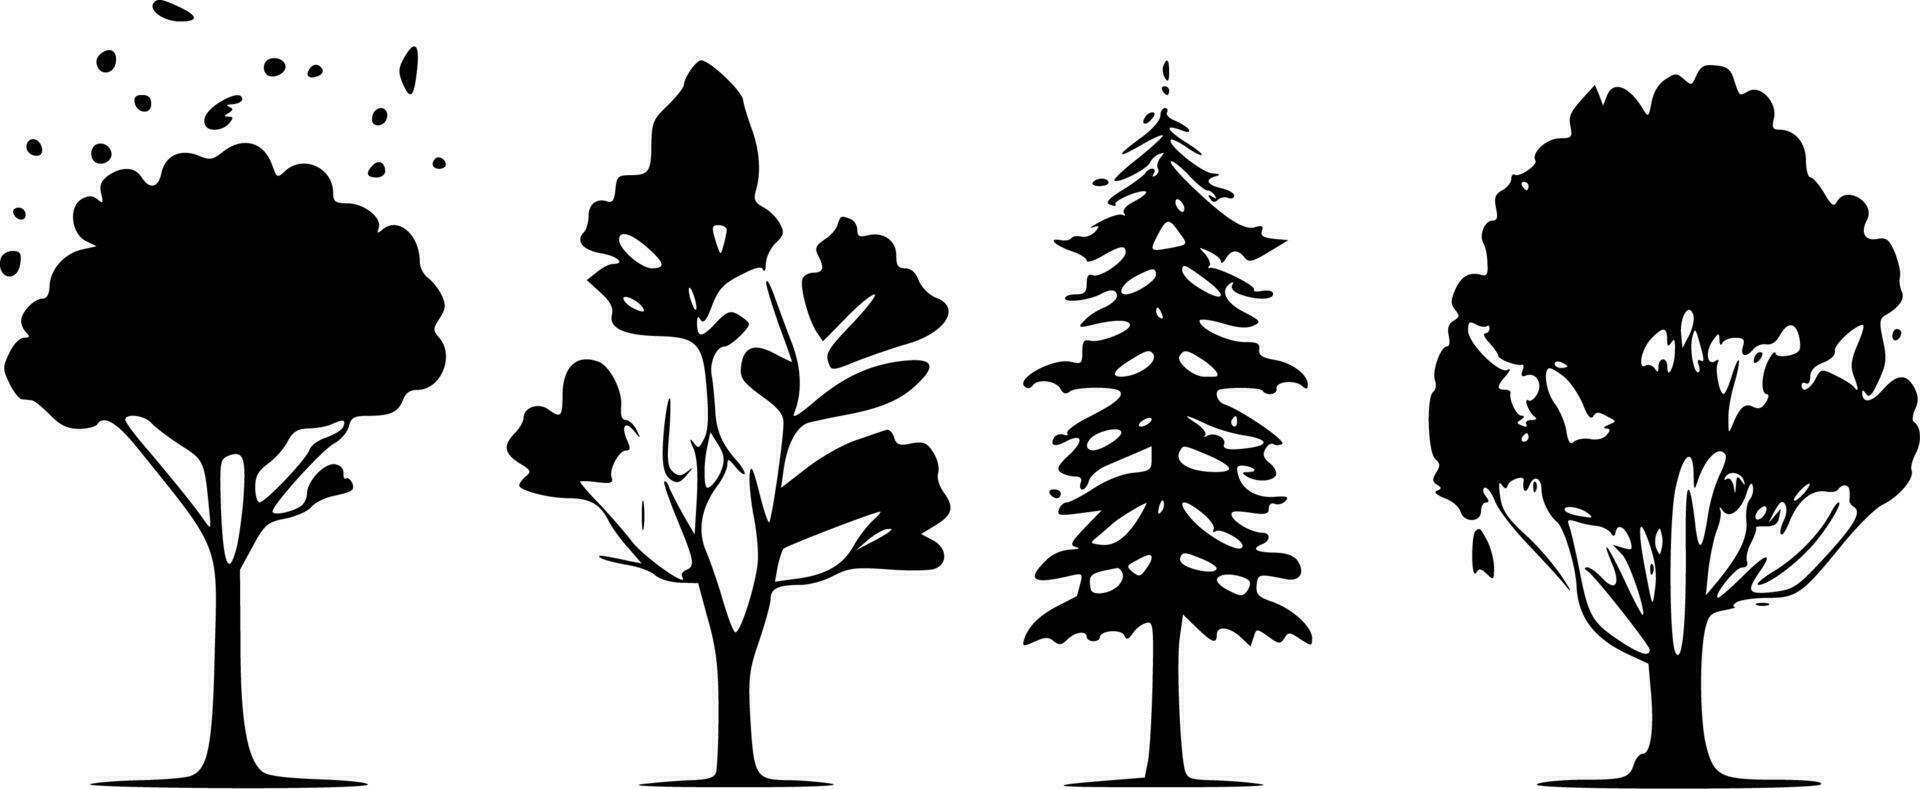 träd - svart och vit isolerat ikon - vektor illustration